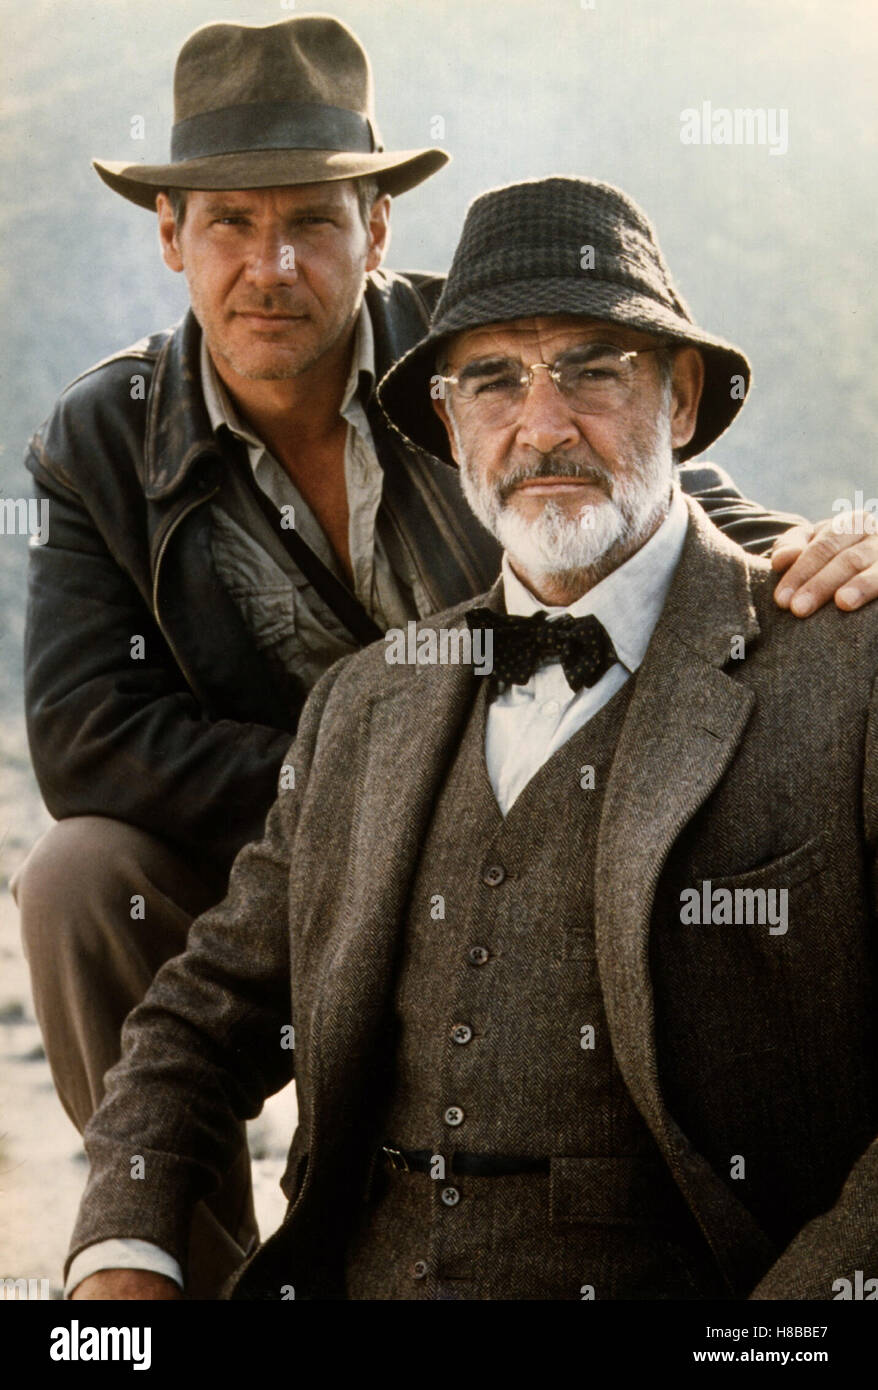 Indiana Jones und der letzte Kreuzzug, (INDIANA JONES AND THE LAST CRUSADE) USA 1989, Regie: Steven Spielberg, HARRISON FORD, SEAN CONNERY, Key: Hüte, Tweed, Brille, Fliege Stock Photo